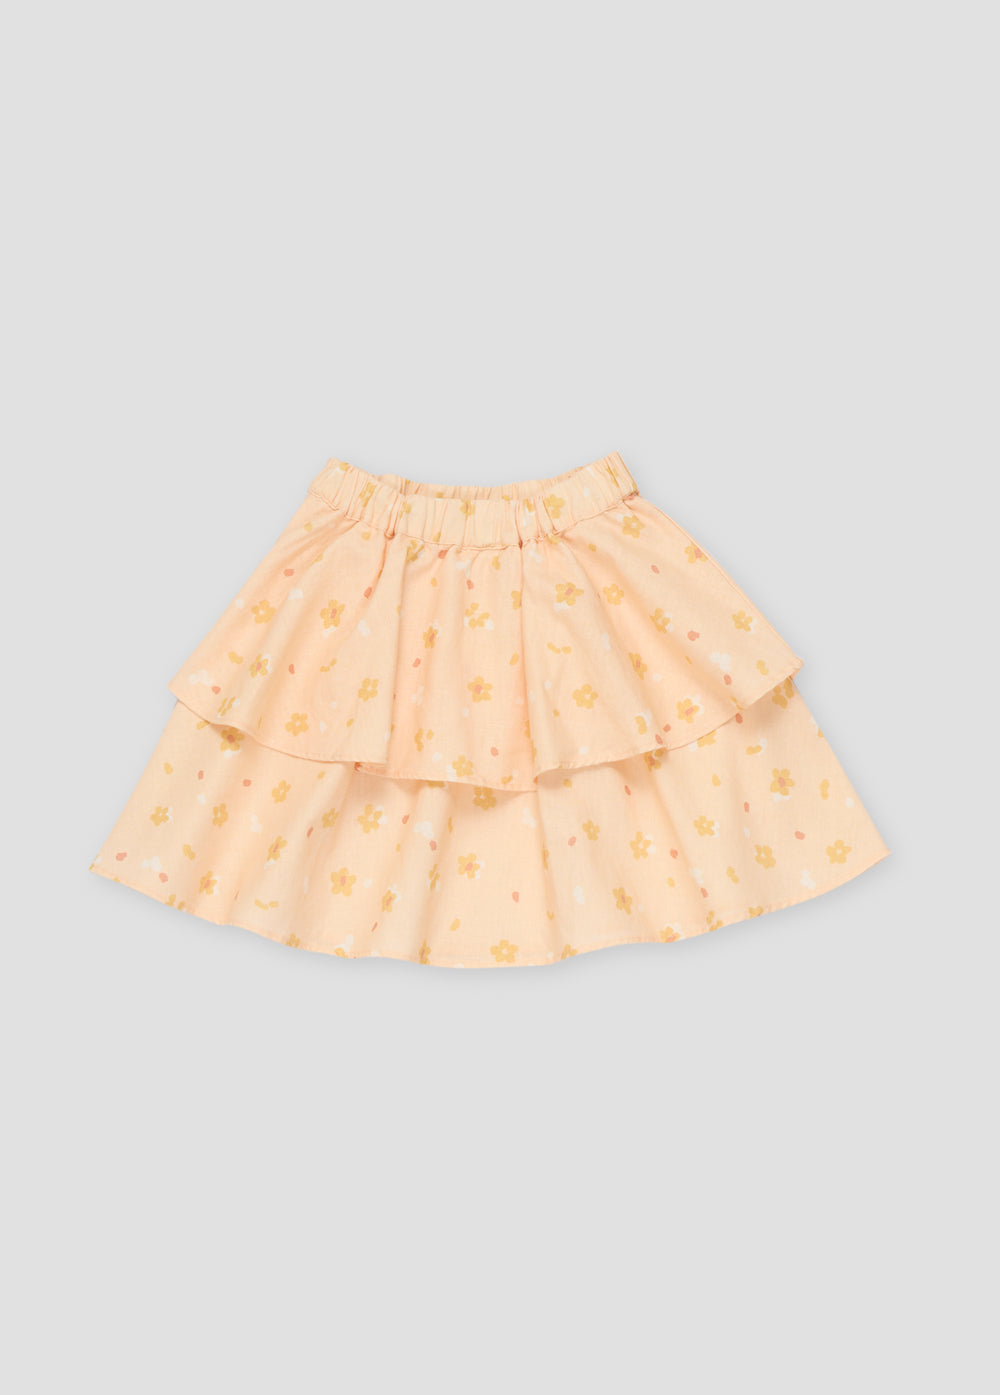 Limoncello Skirt_Sampling